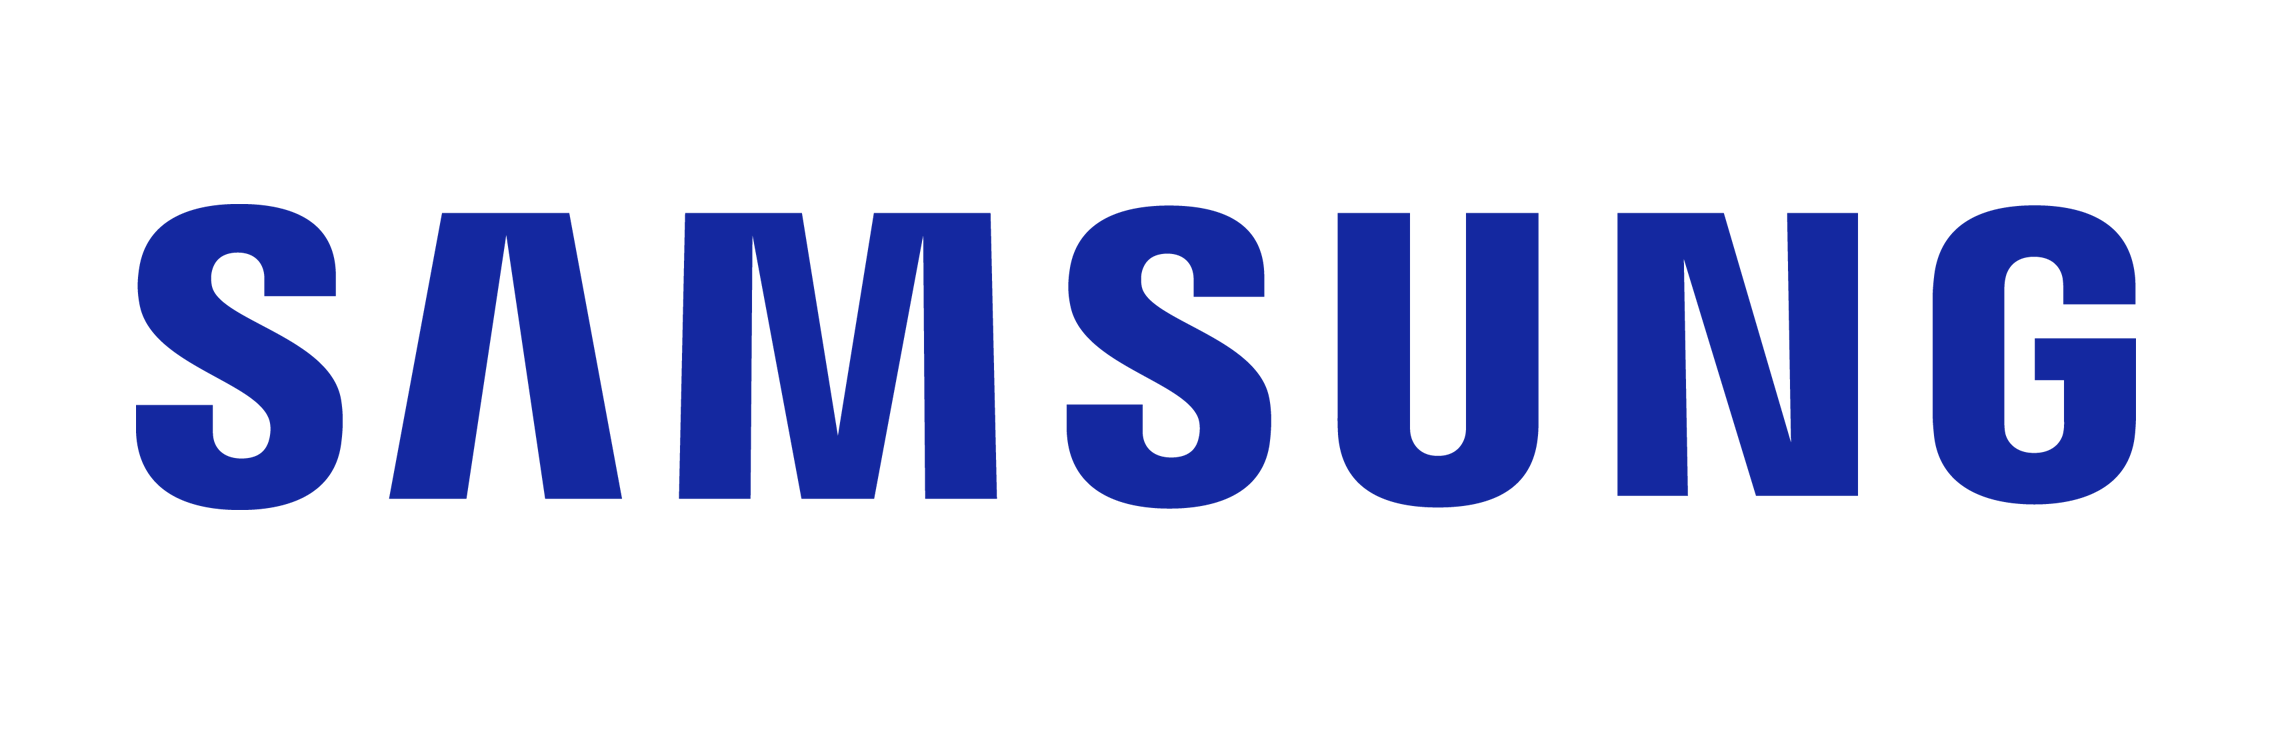 Samsung FHD/HD 4, 5 Series (2018)